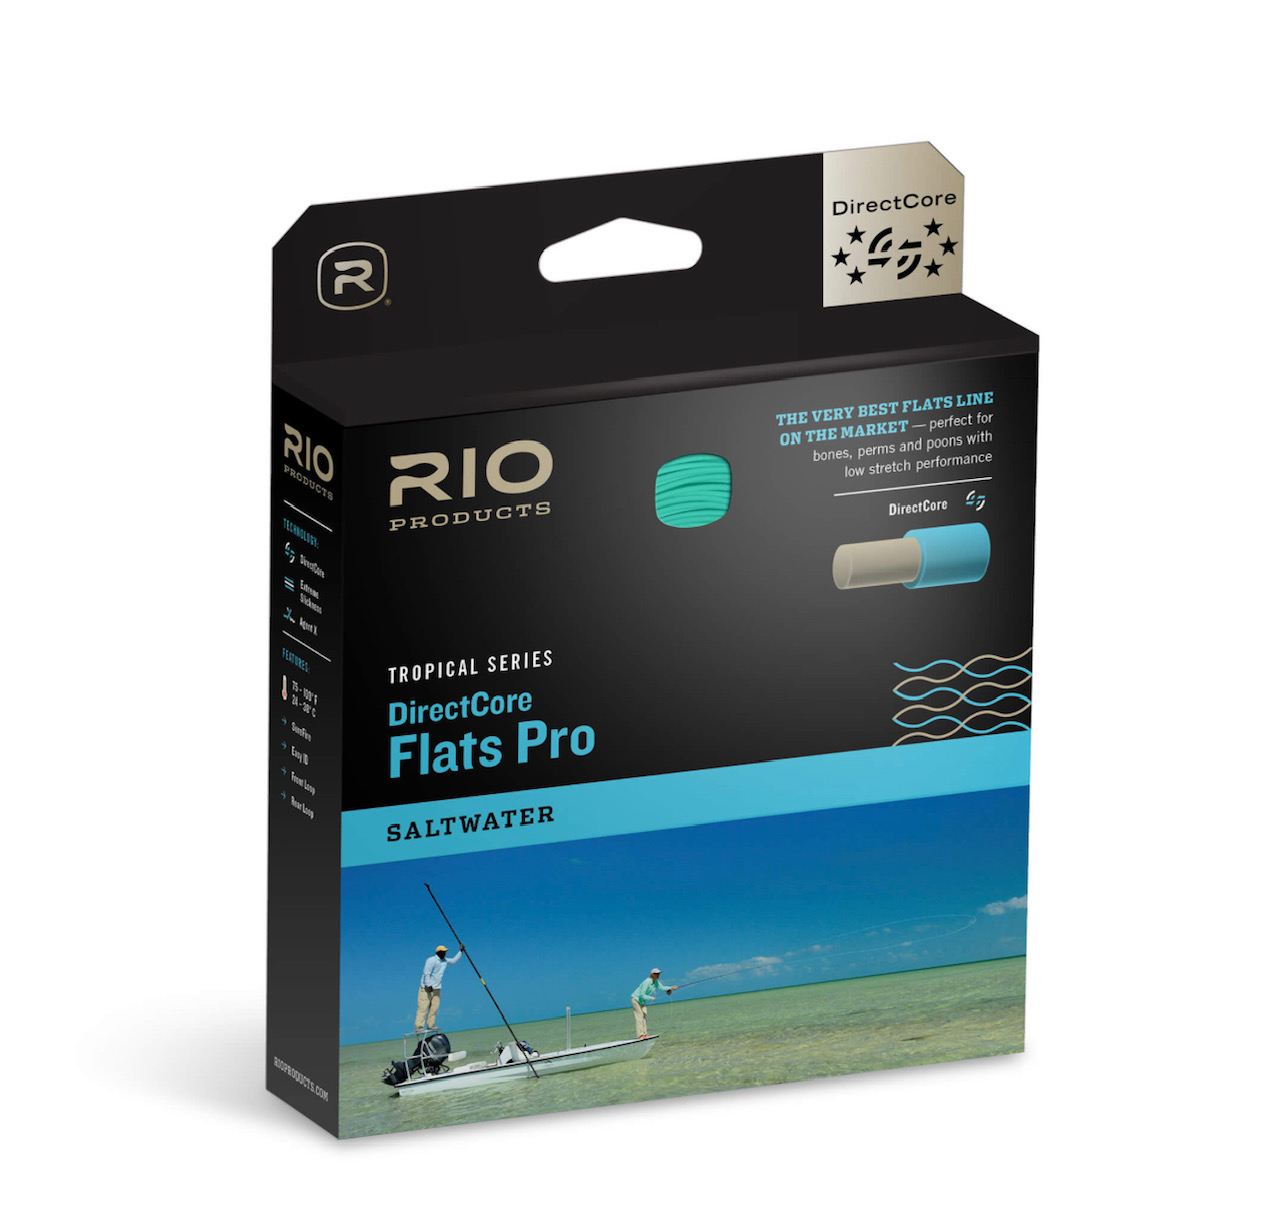 DirectCore Flats Pro